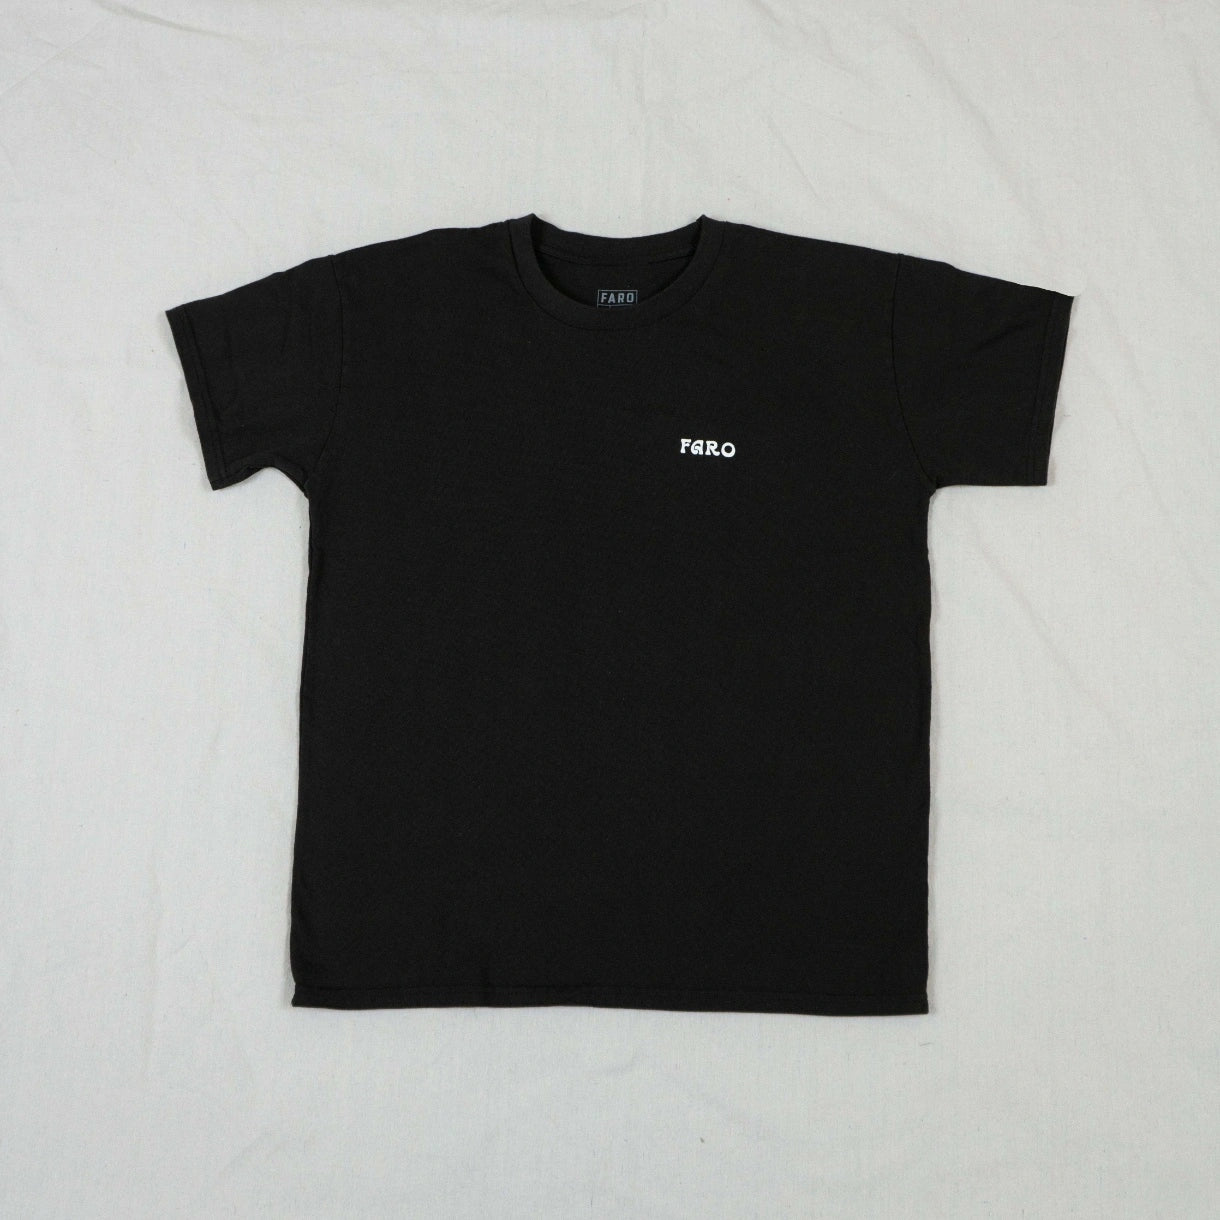 faro front logo black tee shirt